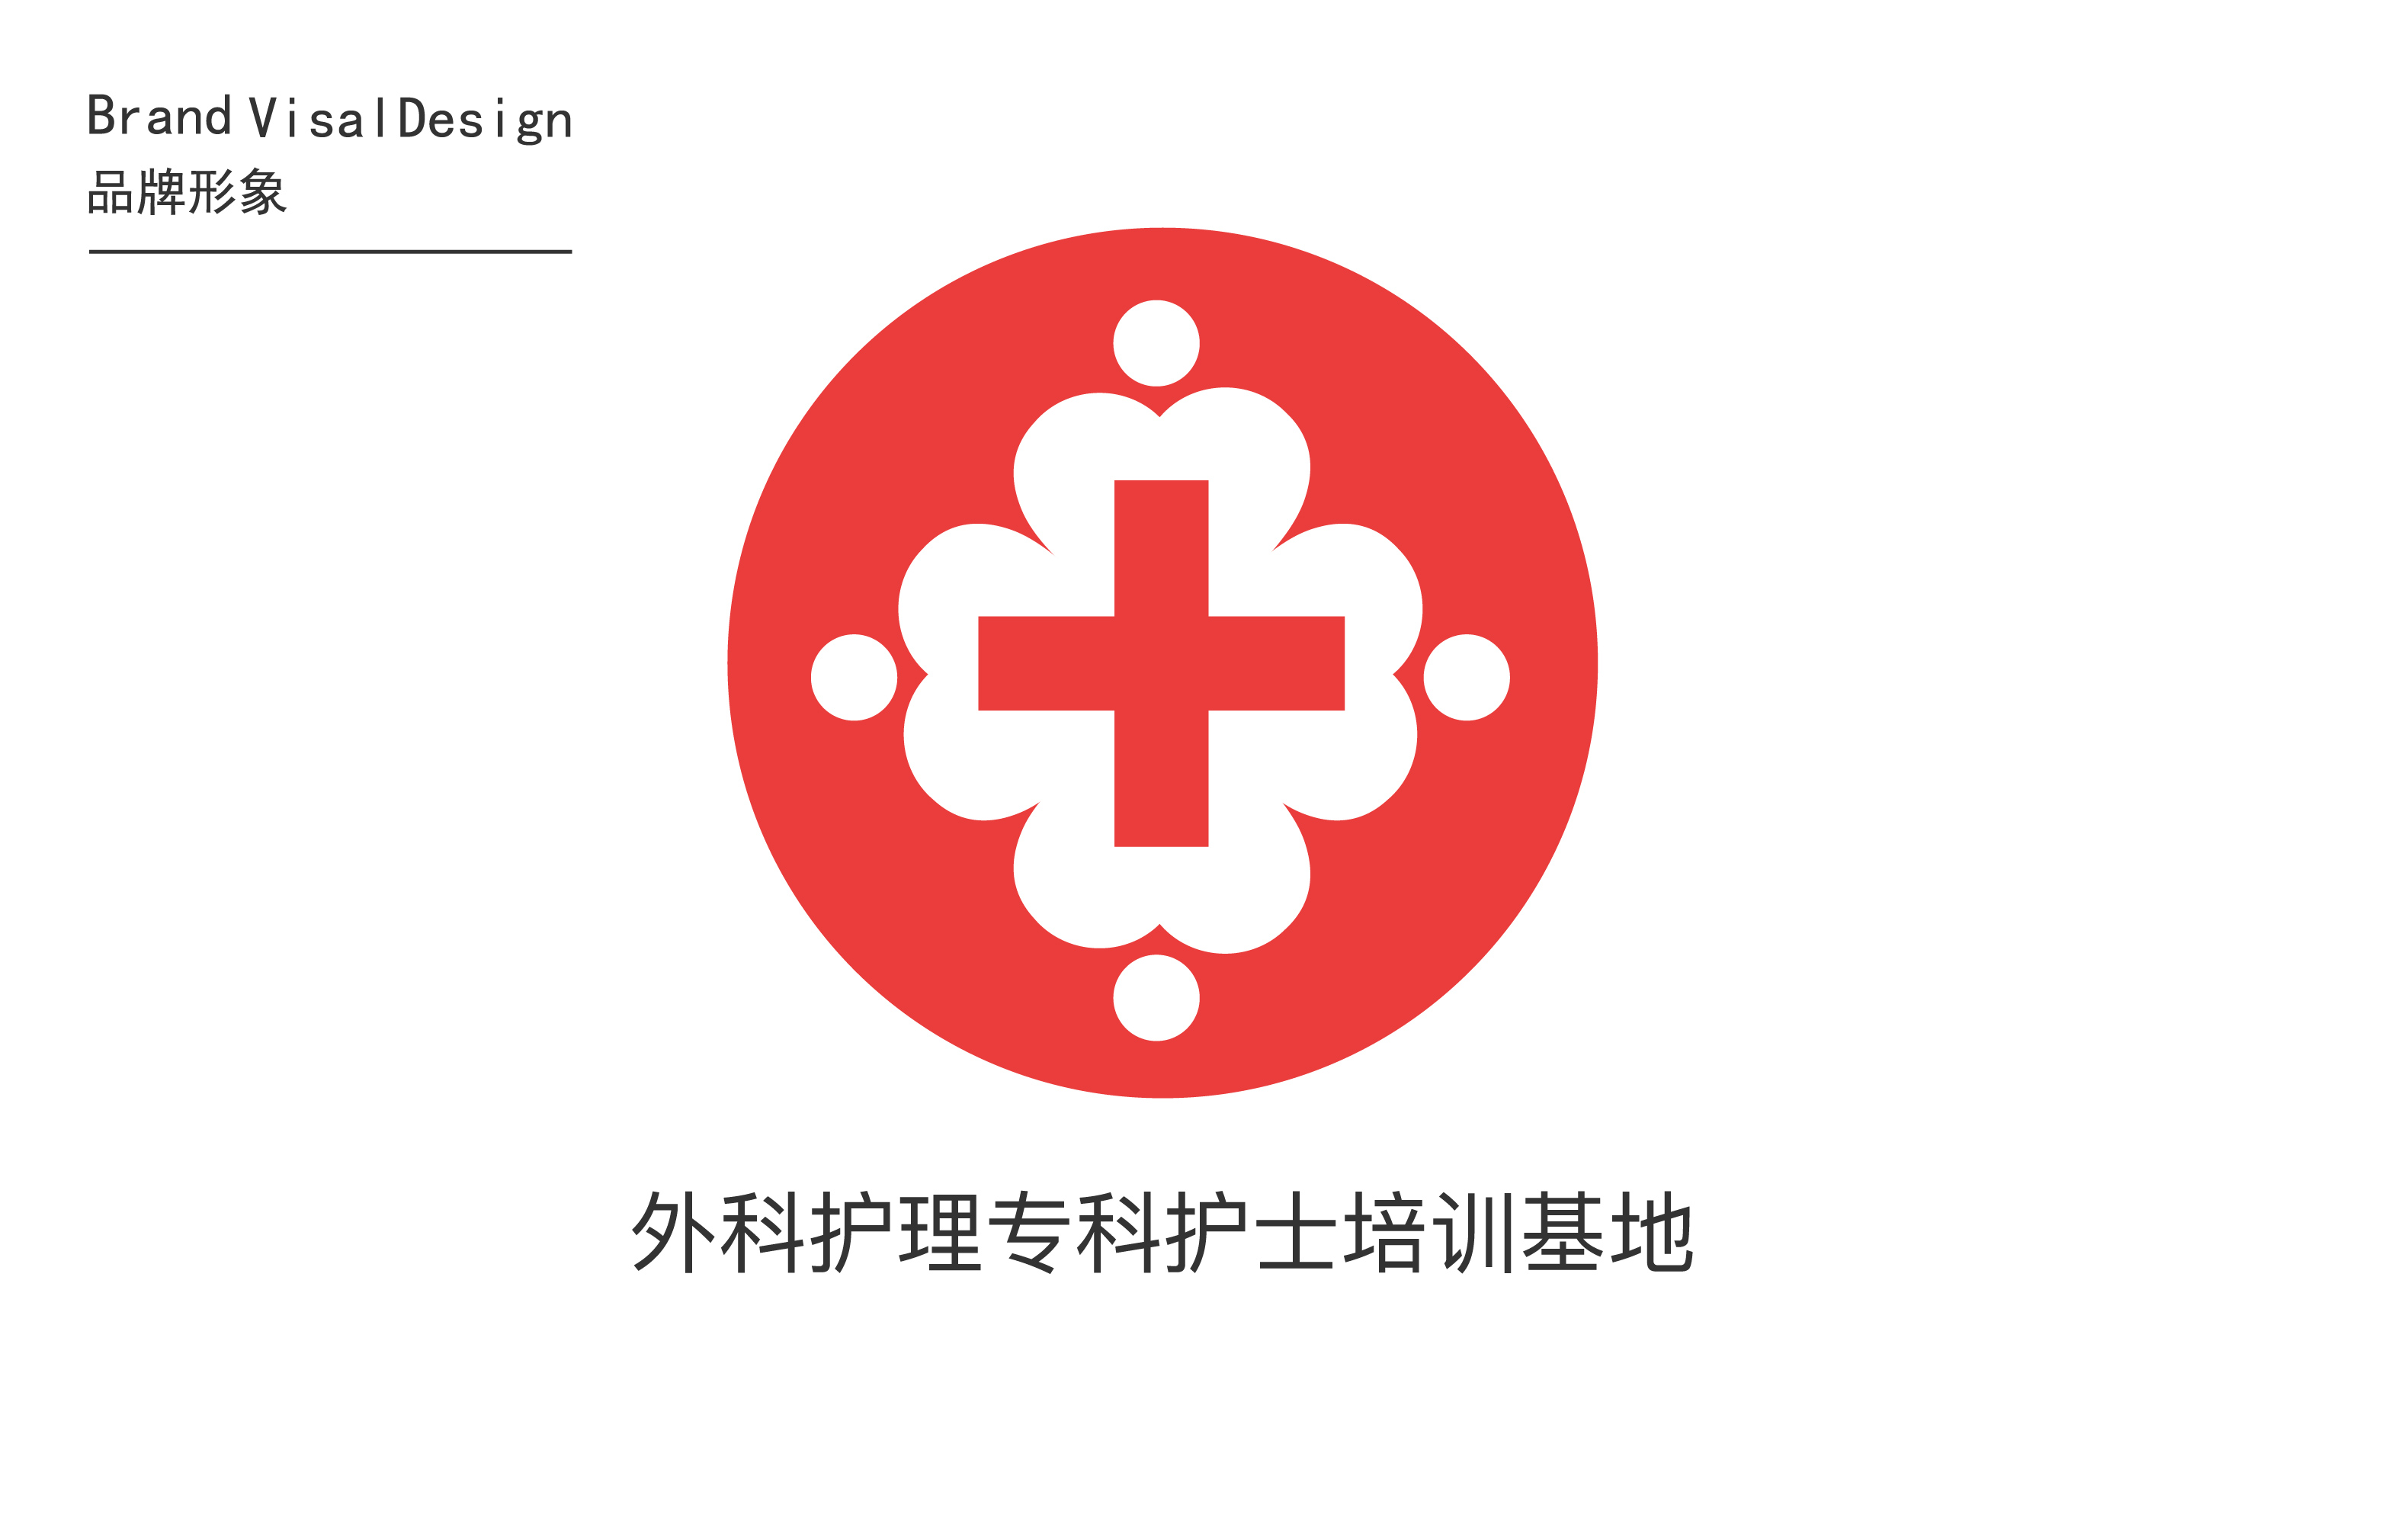 护士培训基地的logo - 找项目 - 云琥在线 - 互联网视觉设计在线培训